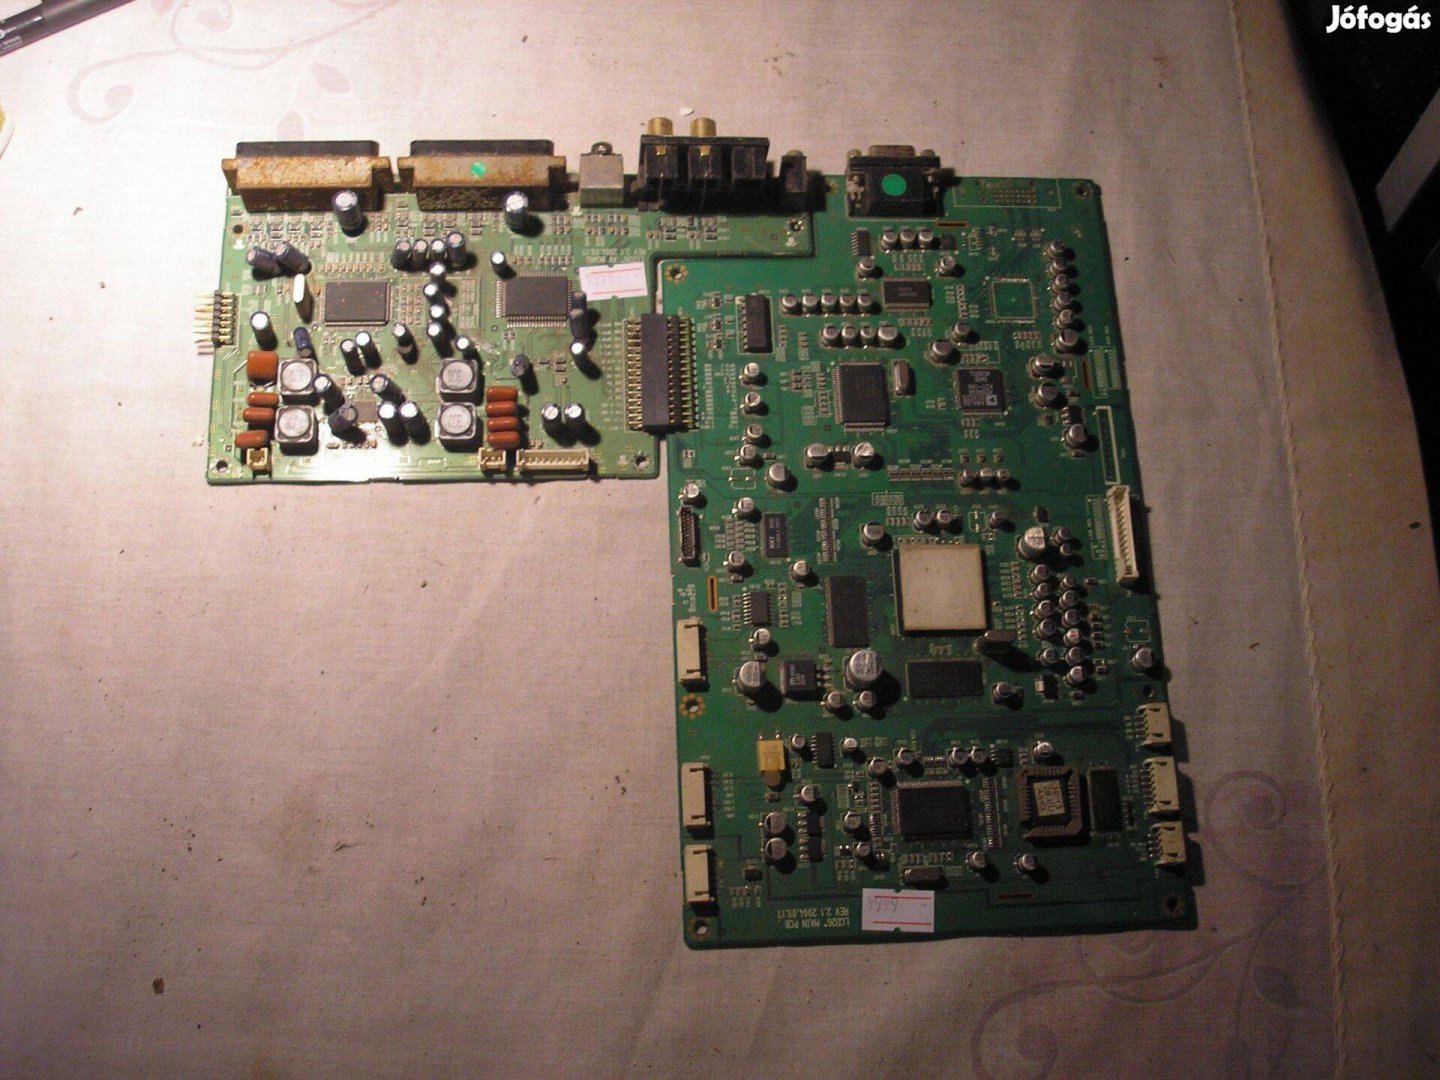 6464 Hyundai HLT-3270 LCD26" AV Board Main PCB REV2.1